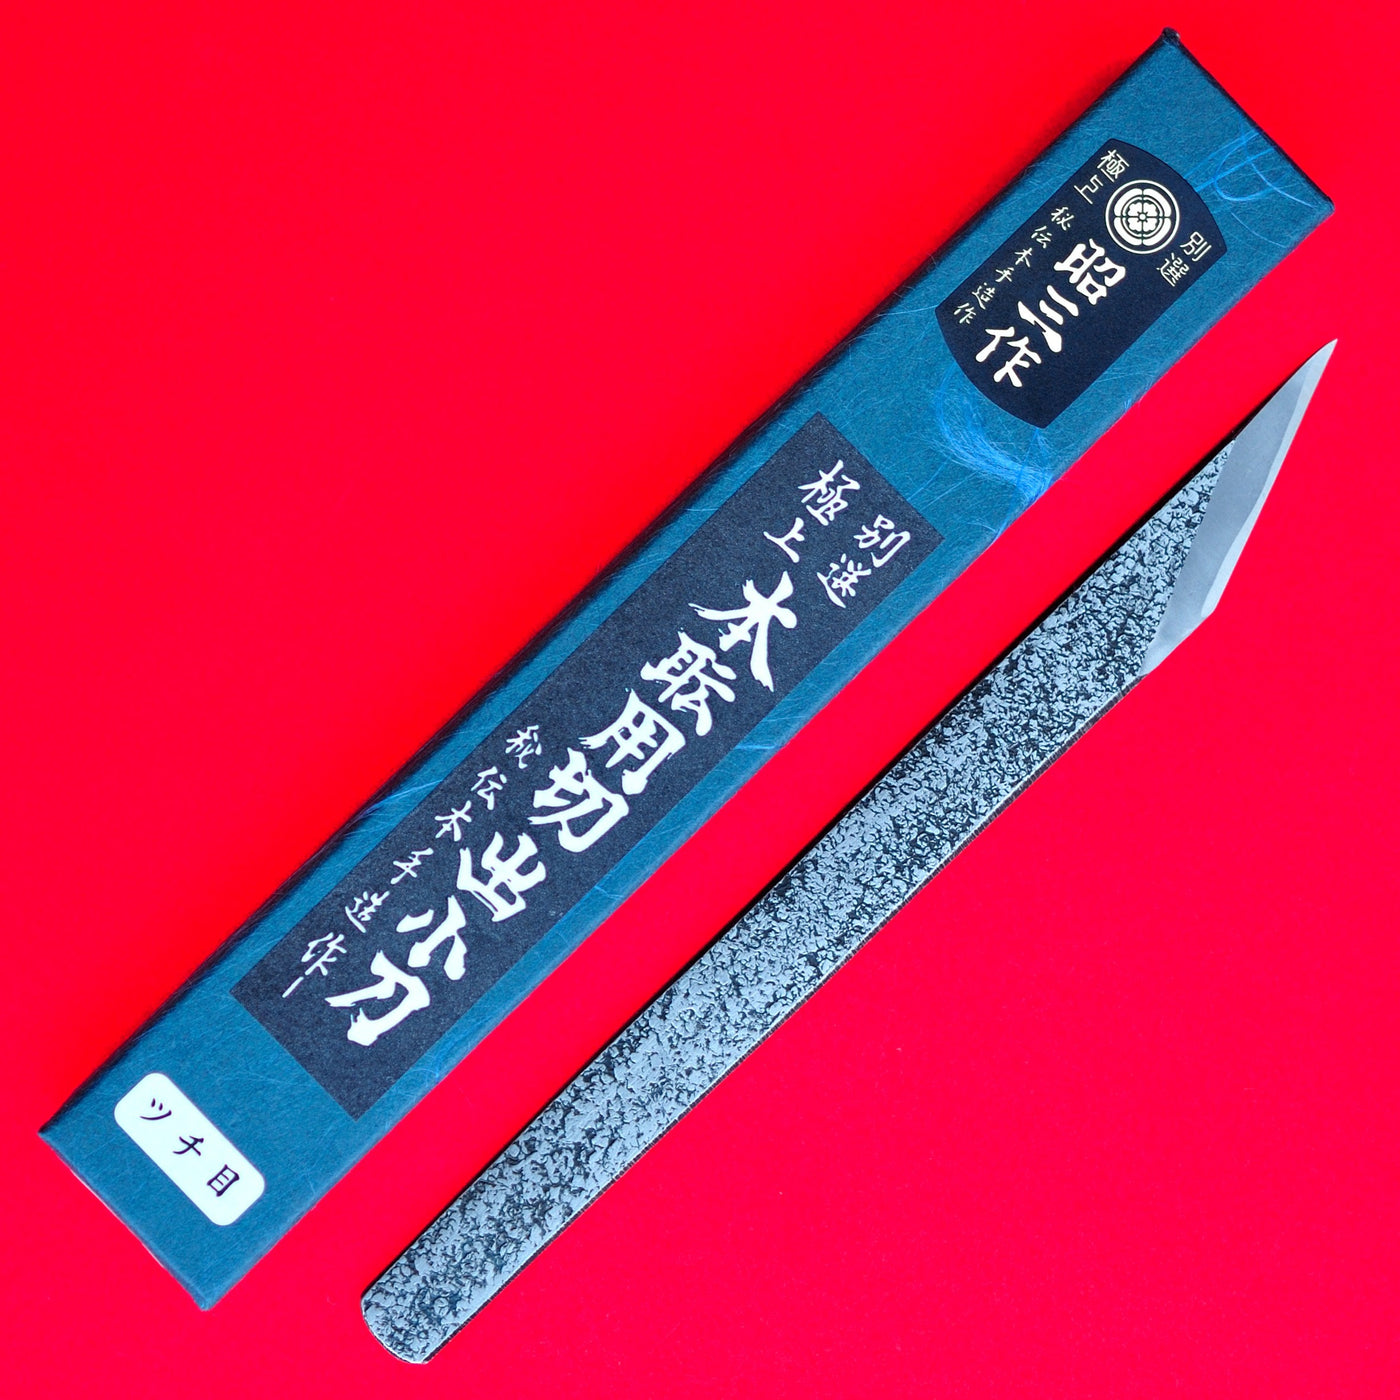 Higonokami 10cm Aogami 2 Steel Folding Knife Large Brass Handle